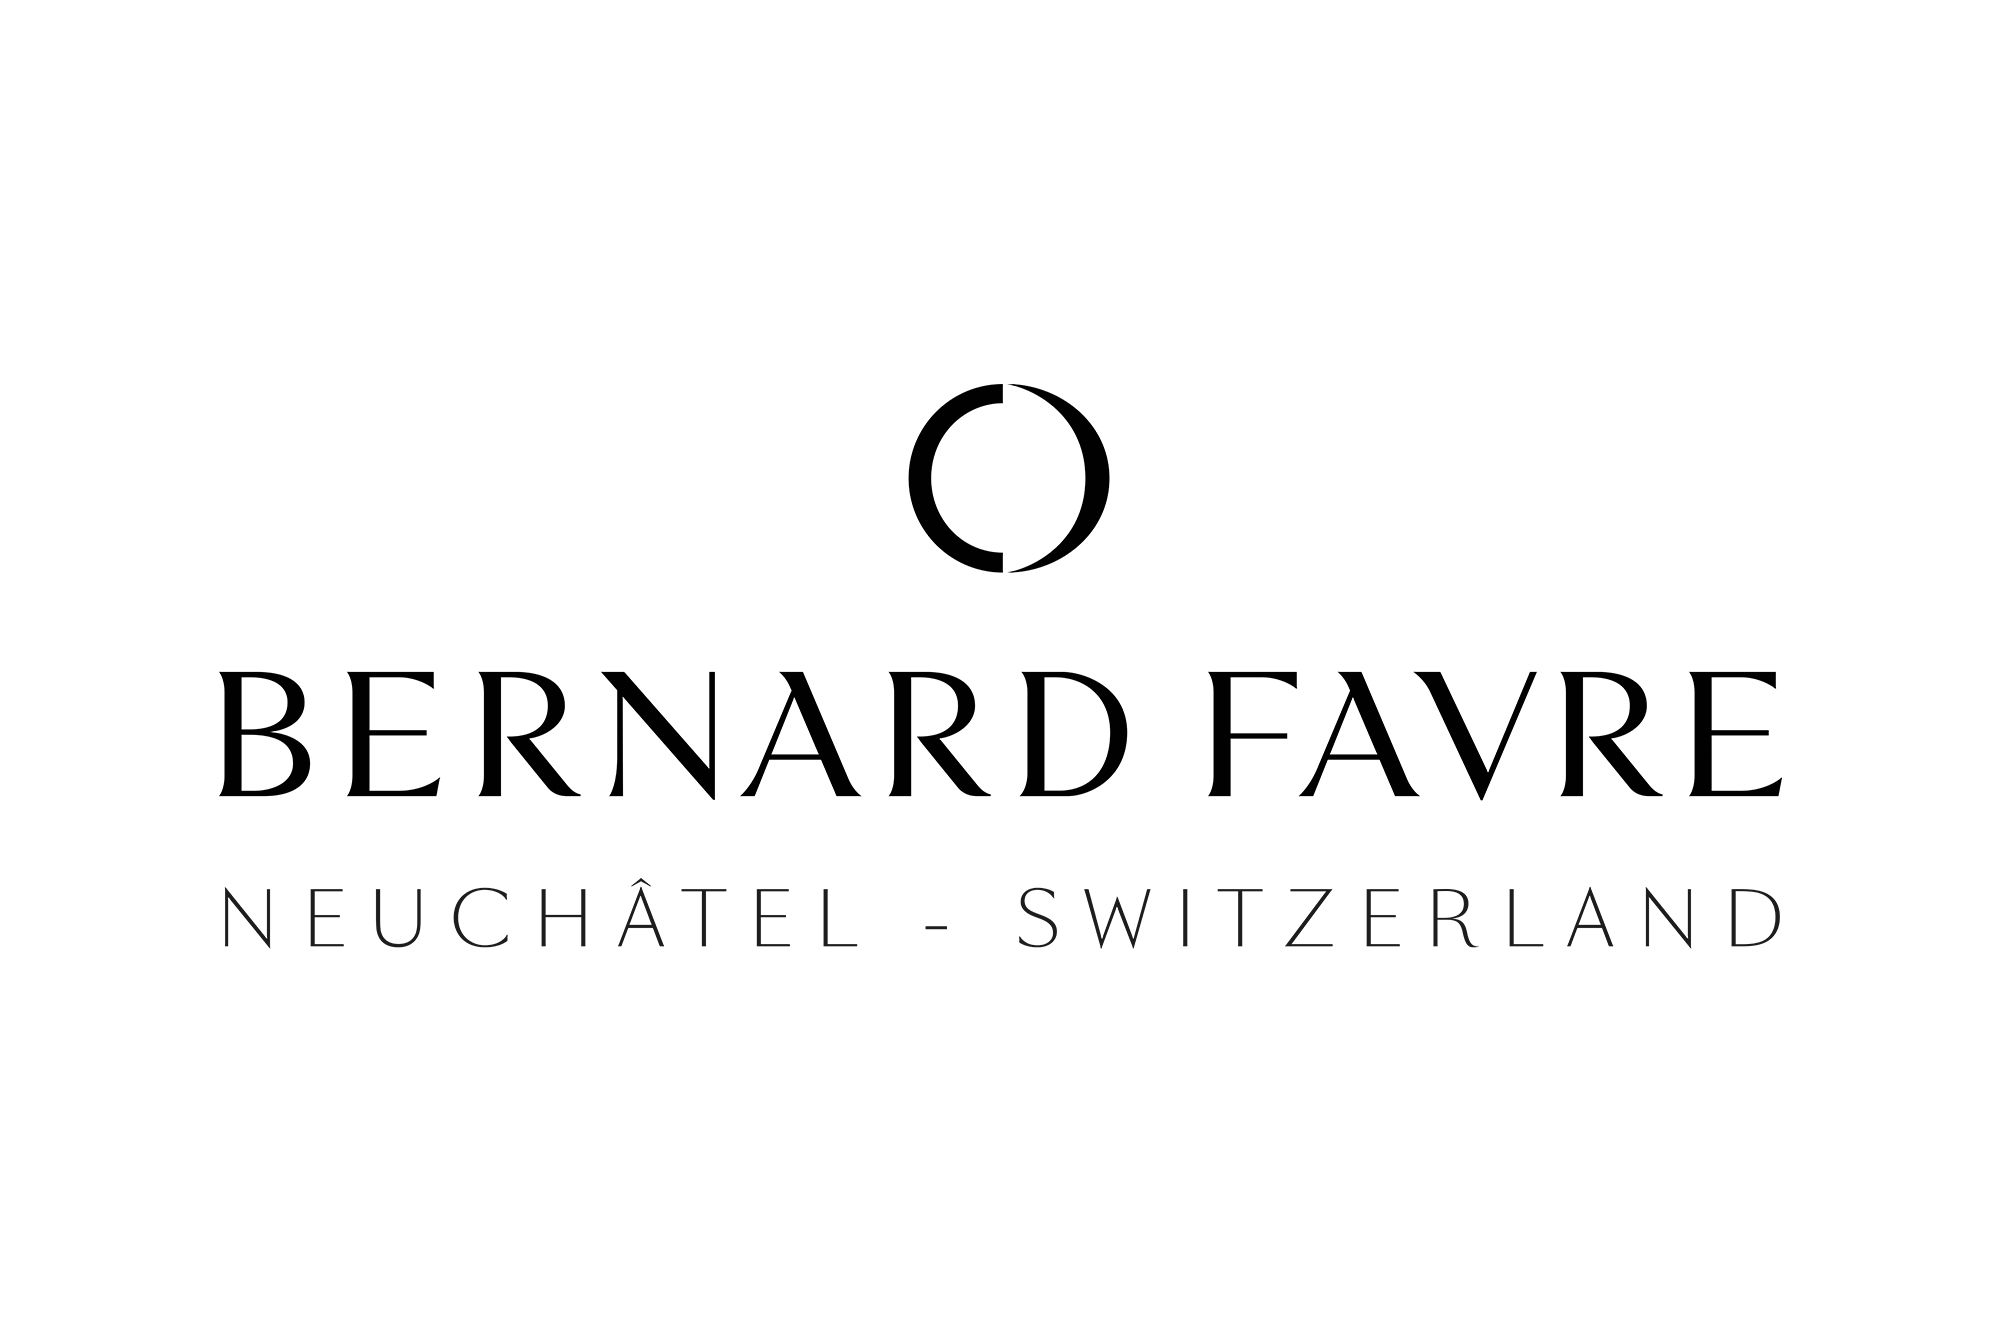 Bernard Favre